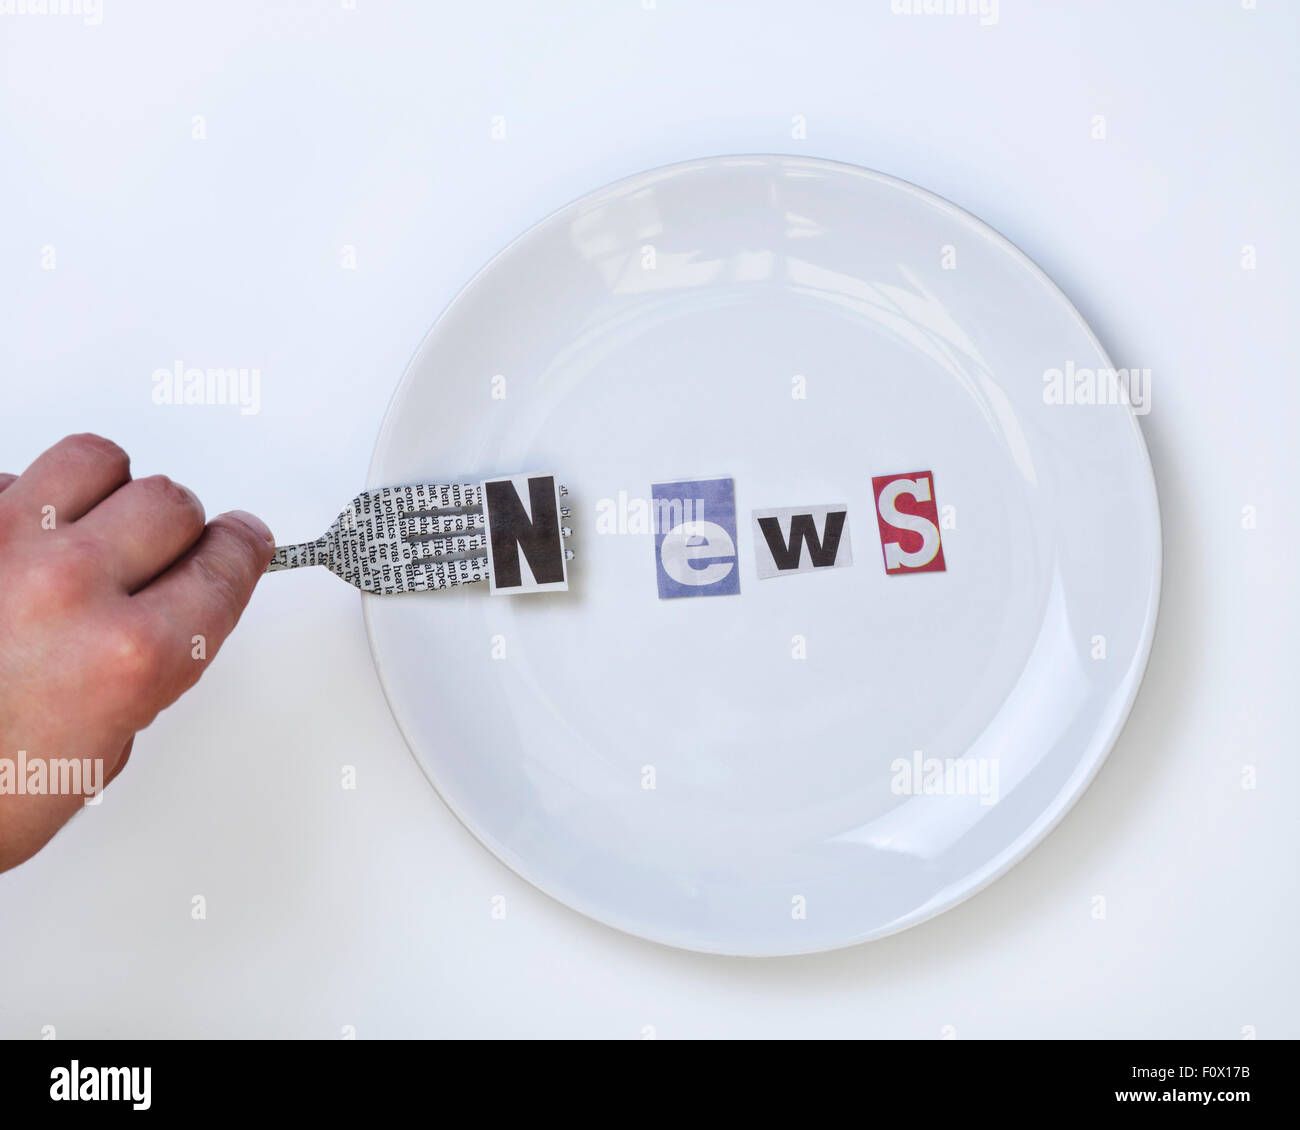 Servizio News Concept : Intaglio News parola sulla piastra bianca composta e lettera N sulla forcella coperto con testo di giornale Foto Stock